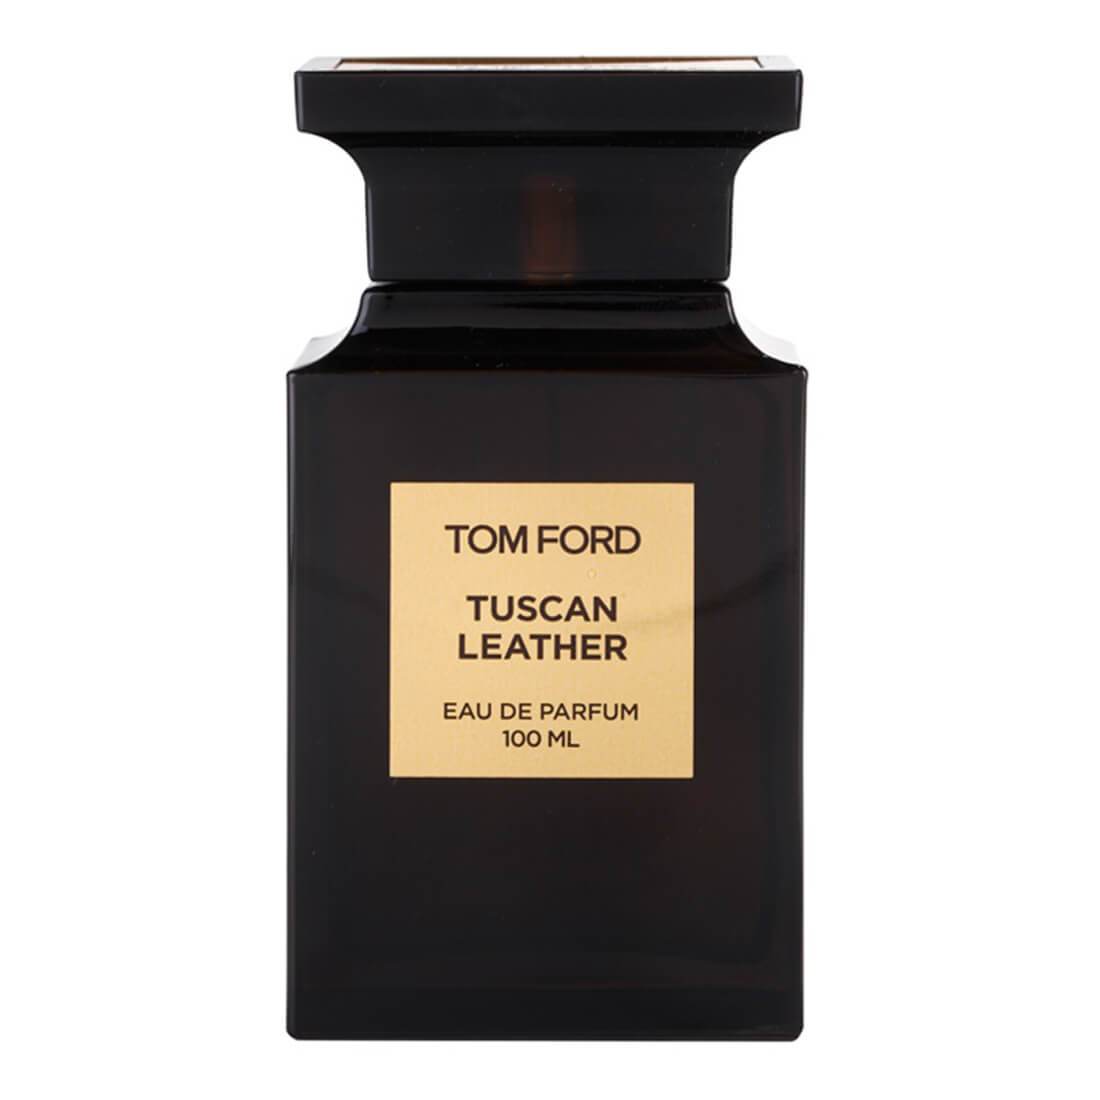 Tom Ford Ombre Leather Eau de Parfum Men's Spray 3.4 oz 888066075145